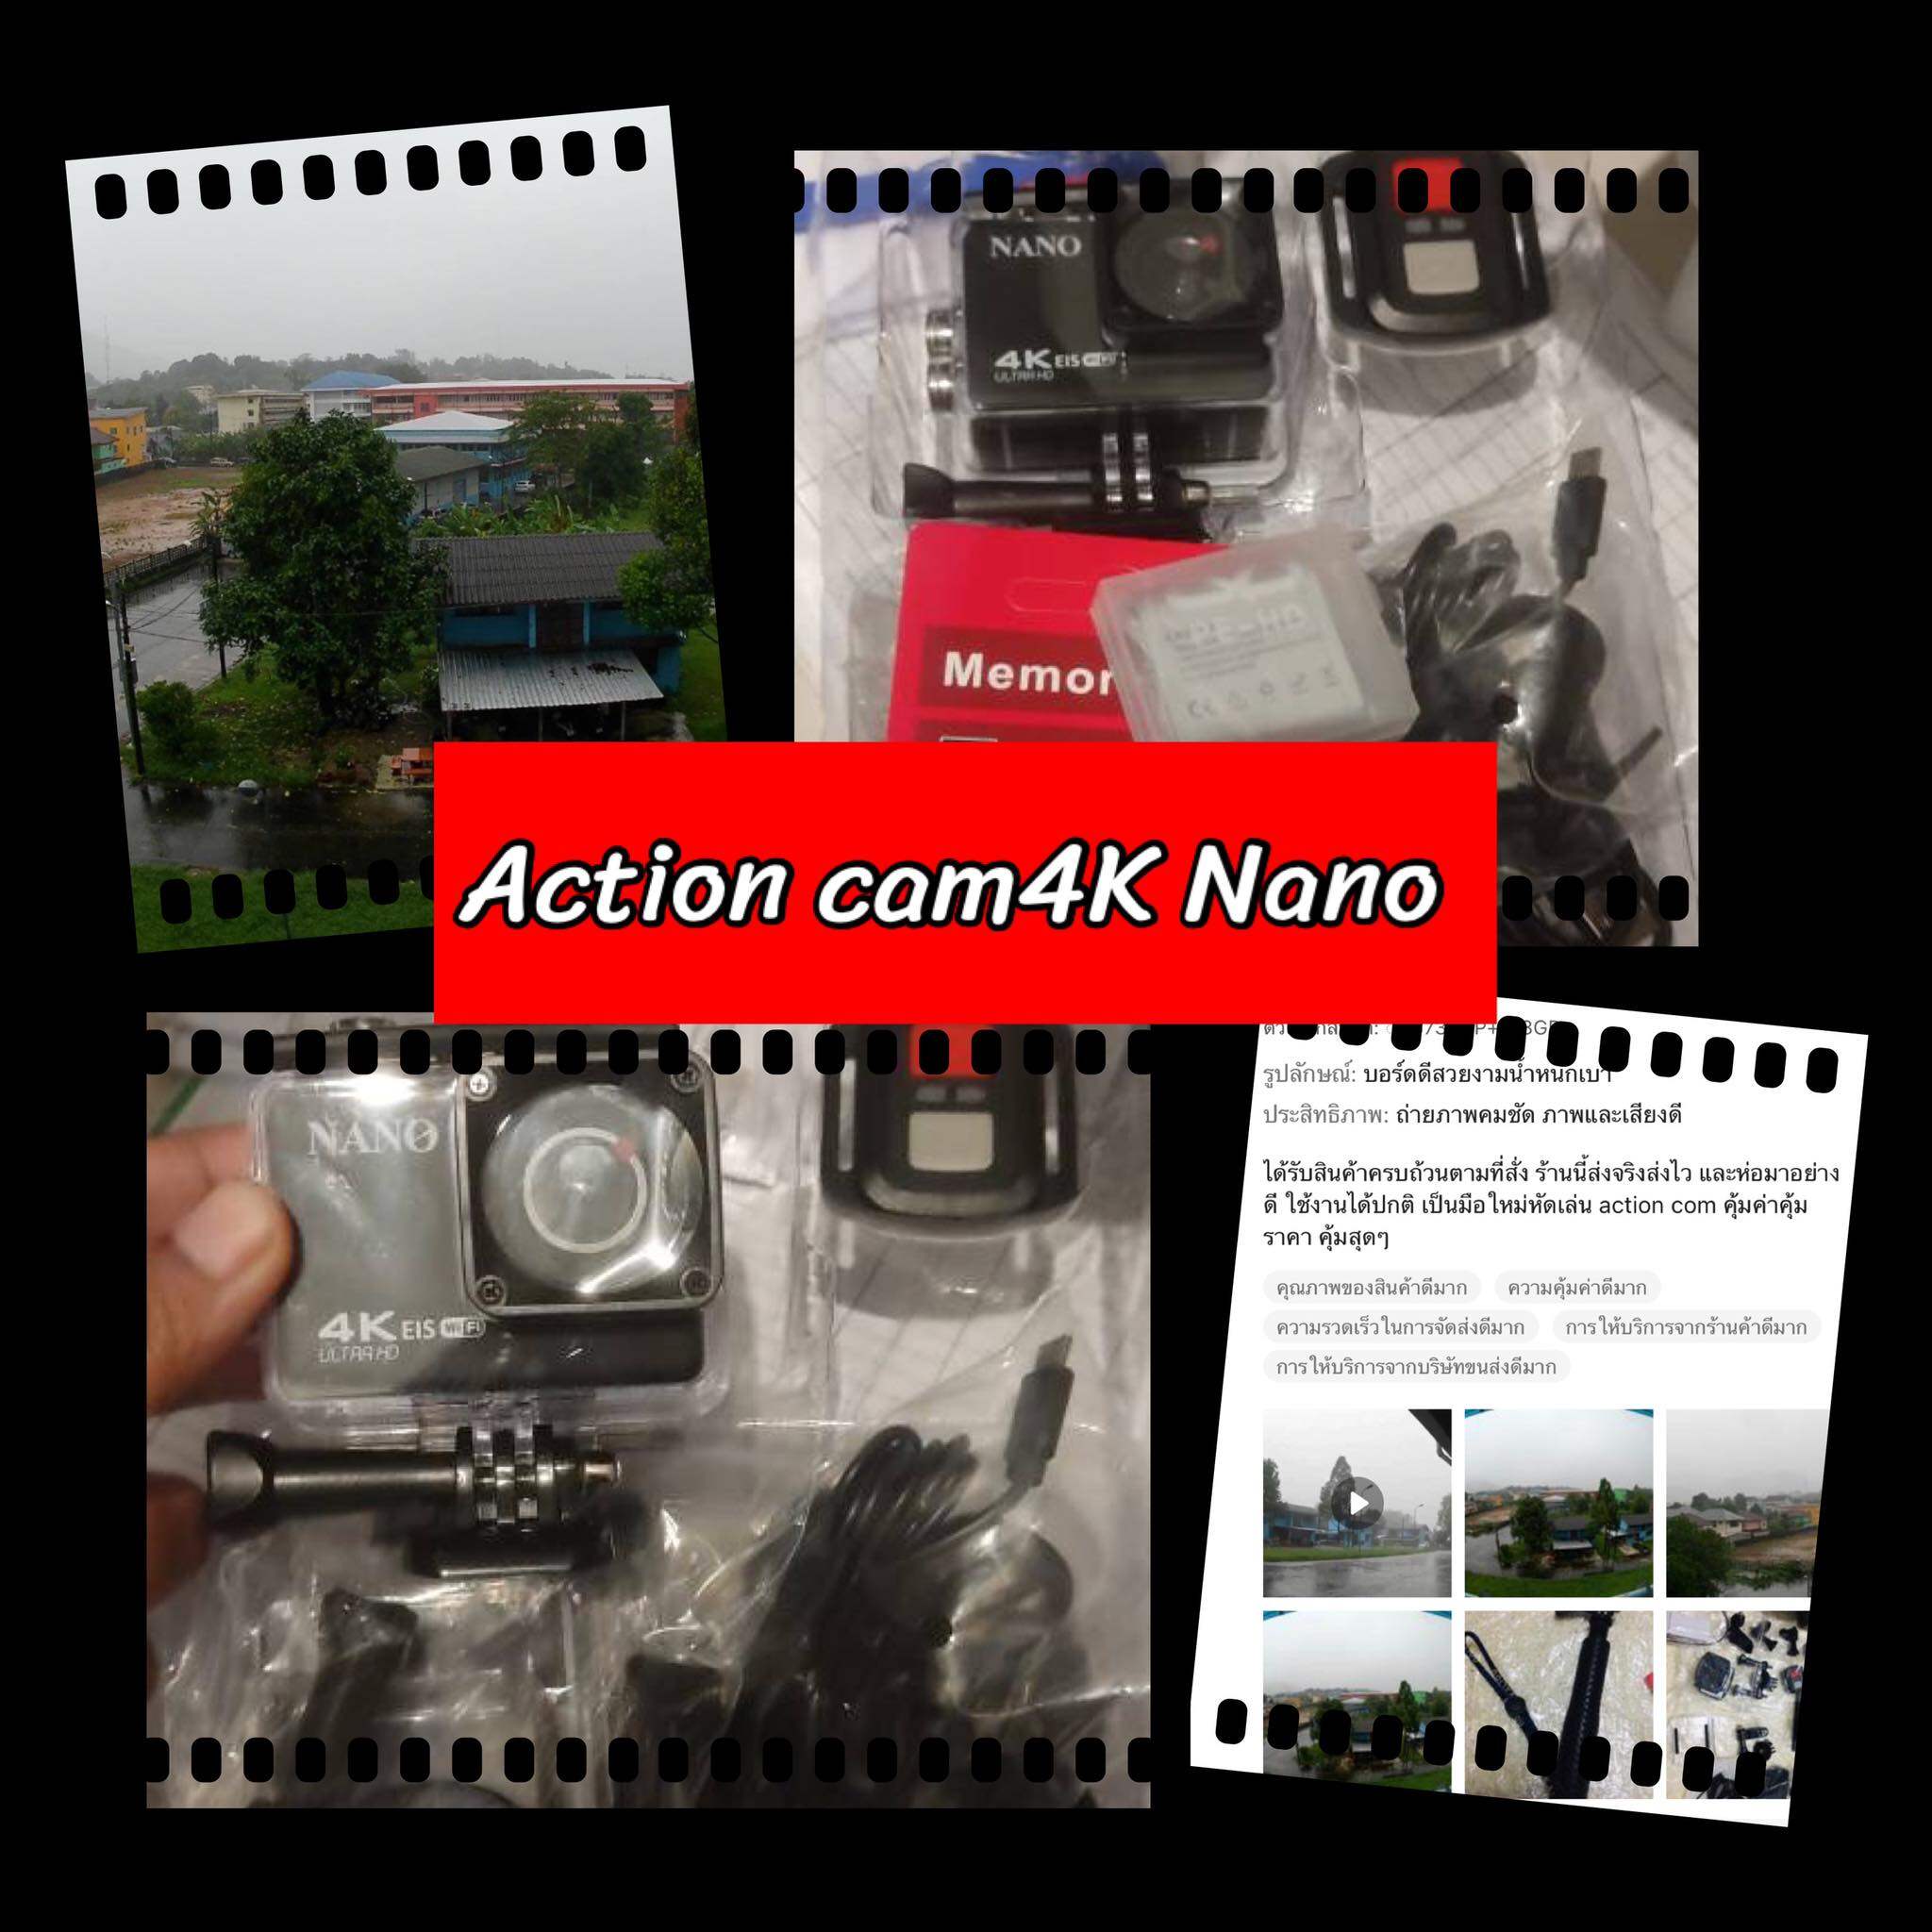 คำอธิบายเพิ่มเติมเกี่ยวกับ Nanotech 2013 กล้องกันน้ำ ถ่ายใต้น้ำ พร้อมรีโมท Sport camera Action camera 4K Ultra HD waterproof WIFI FREE Remote - แบตอึดที่สุดในไทยถึง 1350 Mha